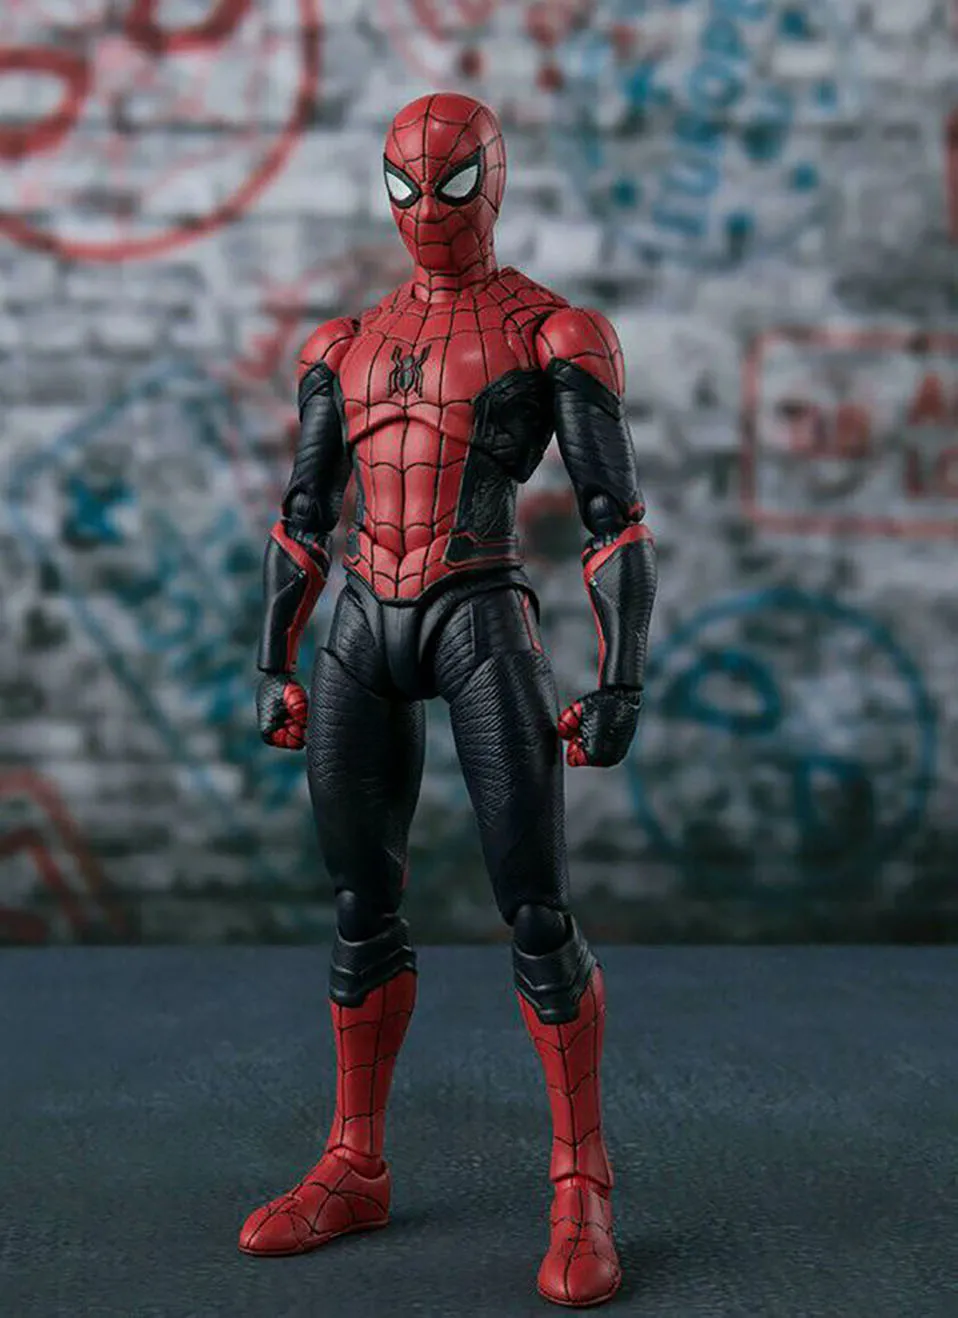 15 см Мстители супер герой Человек паук ПВХ фигурка игрушки возвращение домой в школьный сезон человек паук Коллекционная модель игрушки подарок